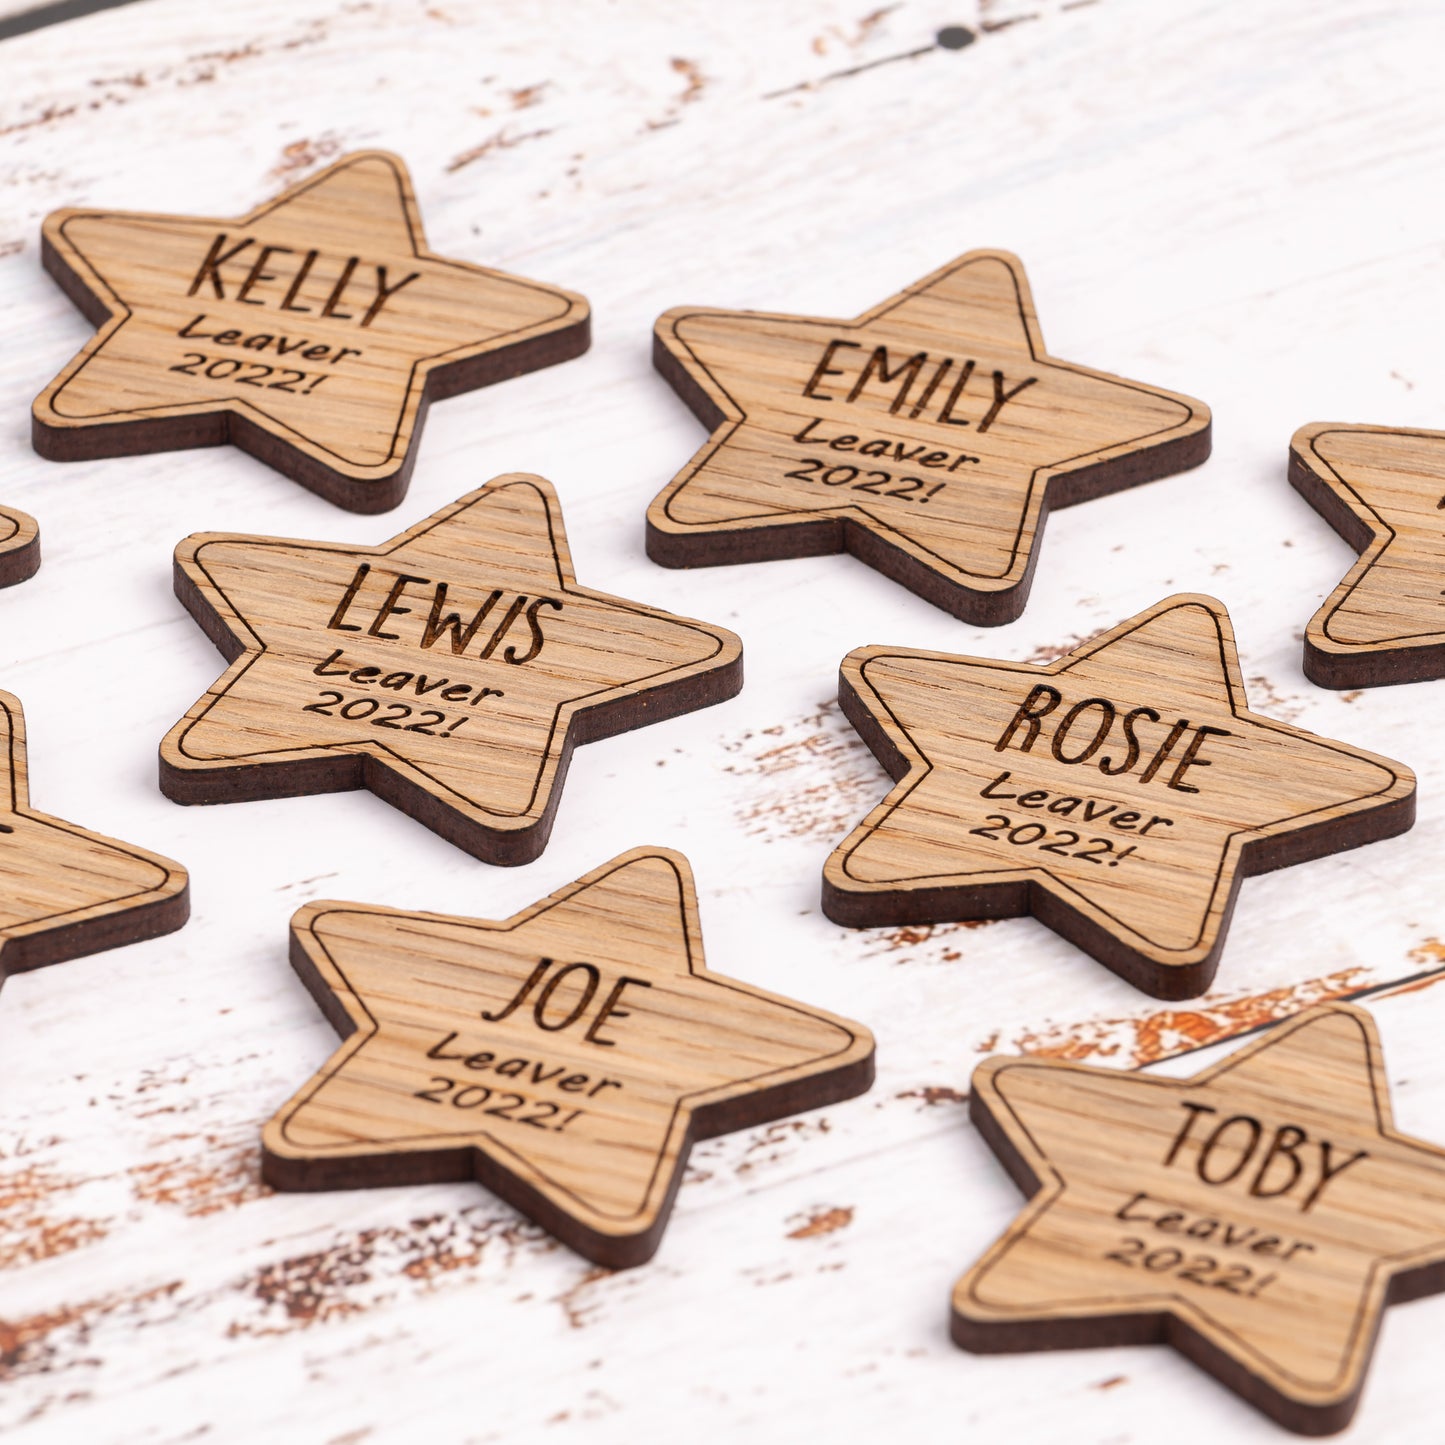 Wooden Star Fridge Magnets - Christmas Gift For Pupils From Teacher